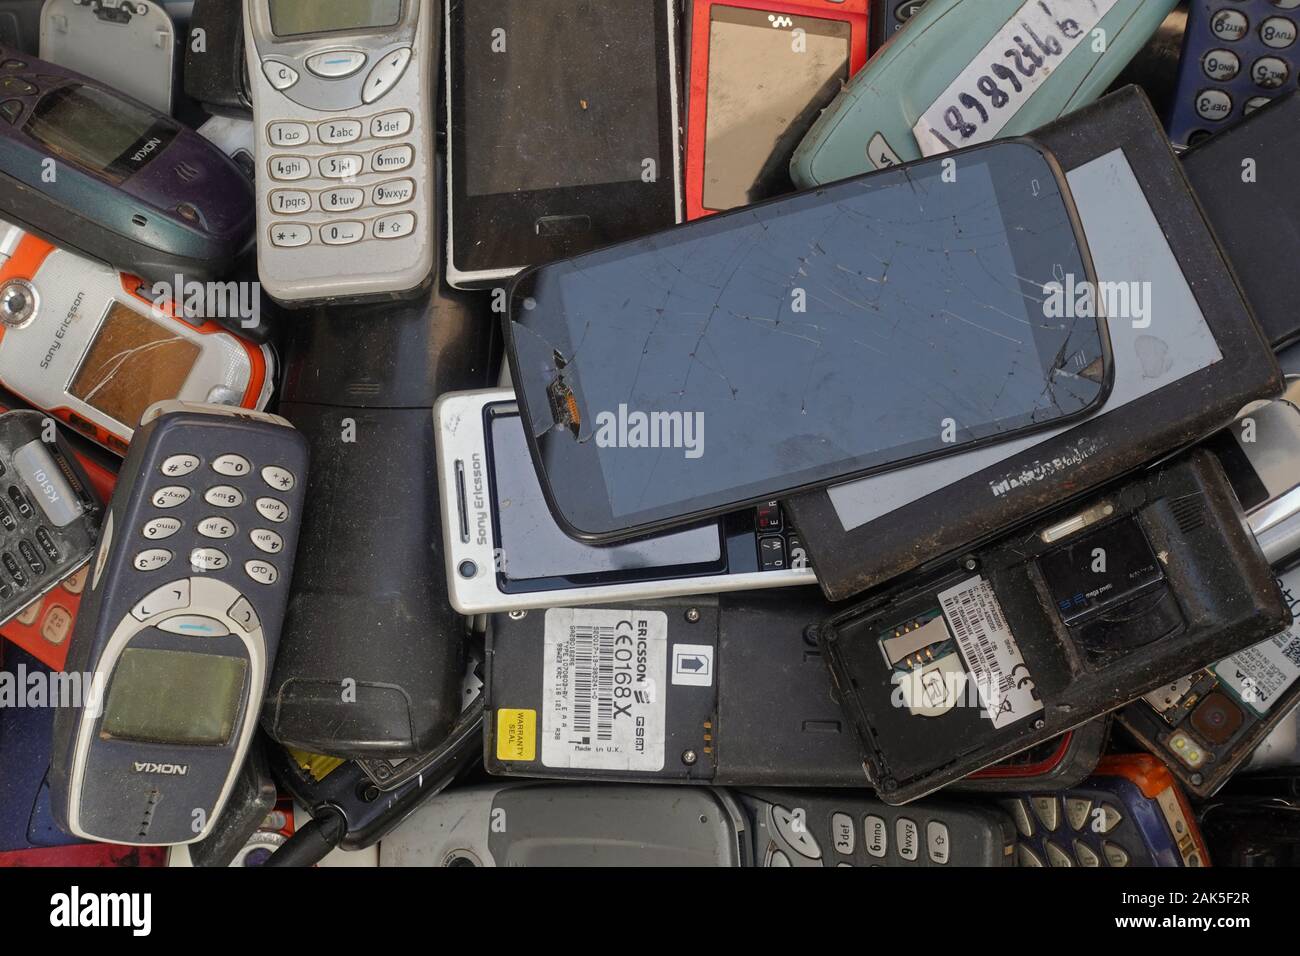 Athen, Griechenland - 18. Oktober 2019: Stapel von alten Handys gebrochen Smartphones und vintage Mobiltelefone an Junk-e-shop. Stockfoto